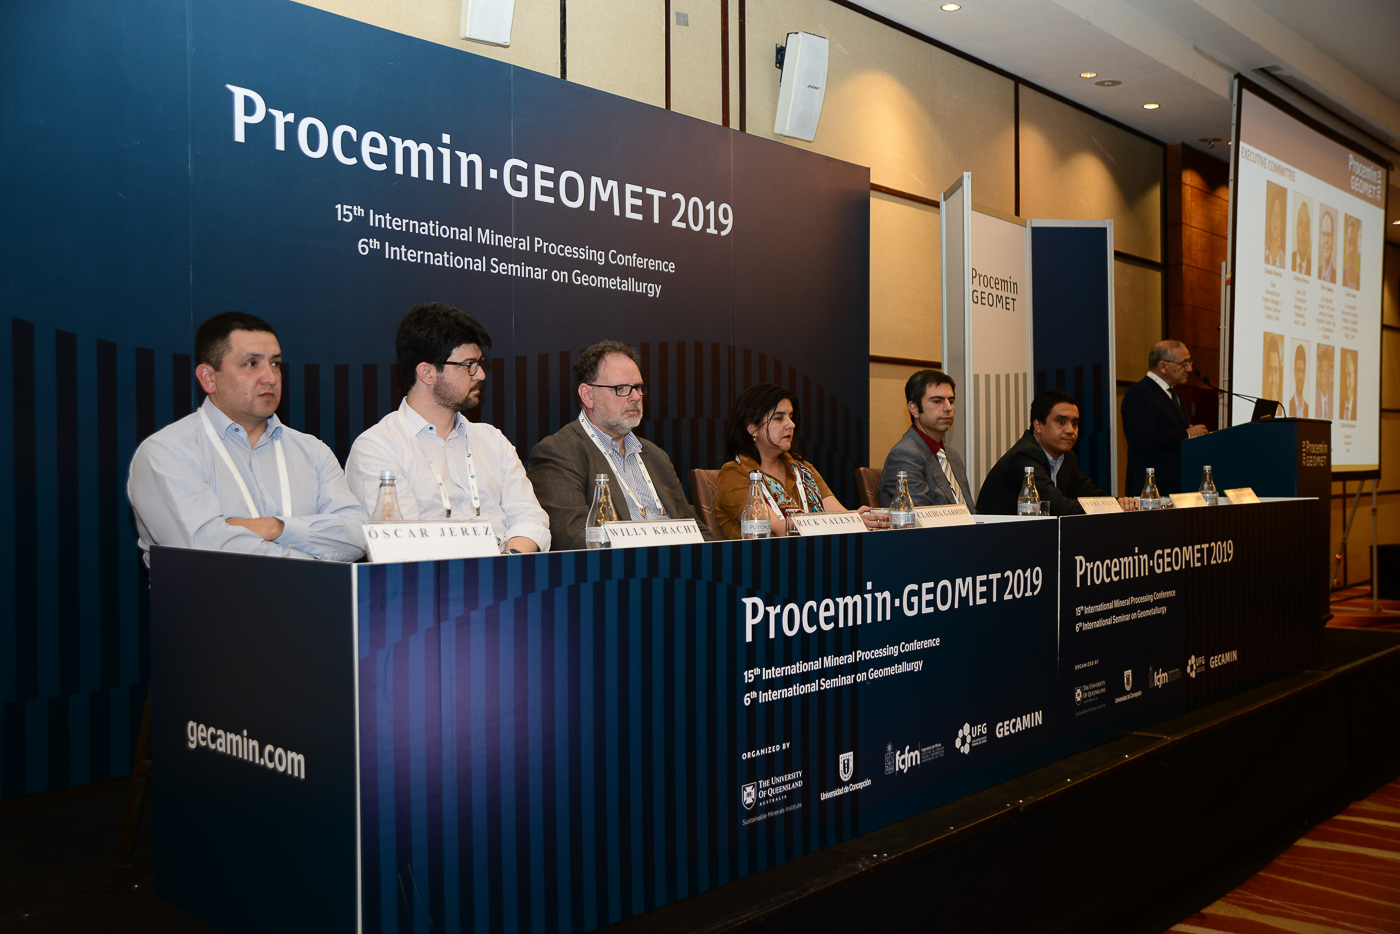 Procemin-Geomet 2019 congregó a más de 350 participantes para discutir los principales desafíos en el procesamiento mineral y geometalurgia